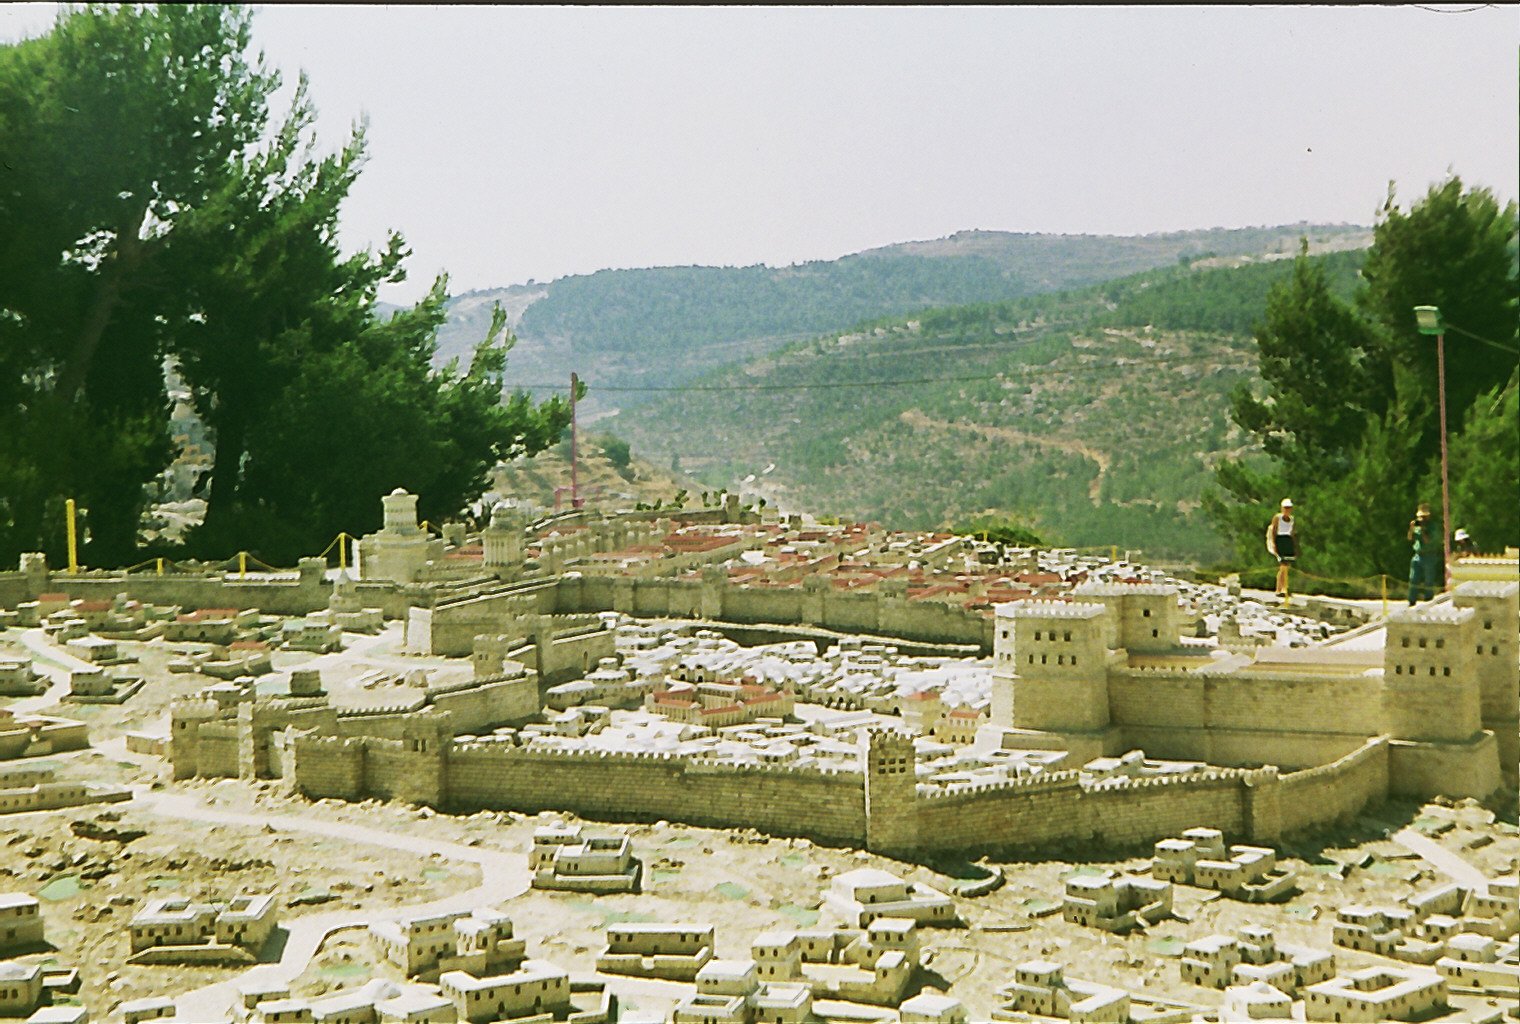 Maqueta del Temple de Jerusalem. Israel